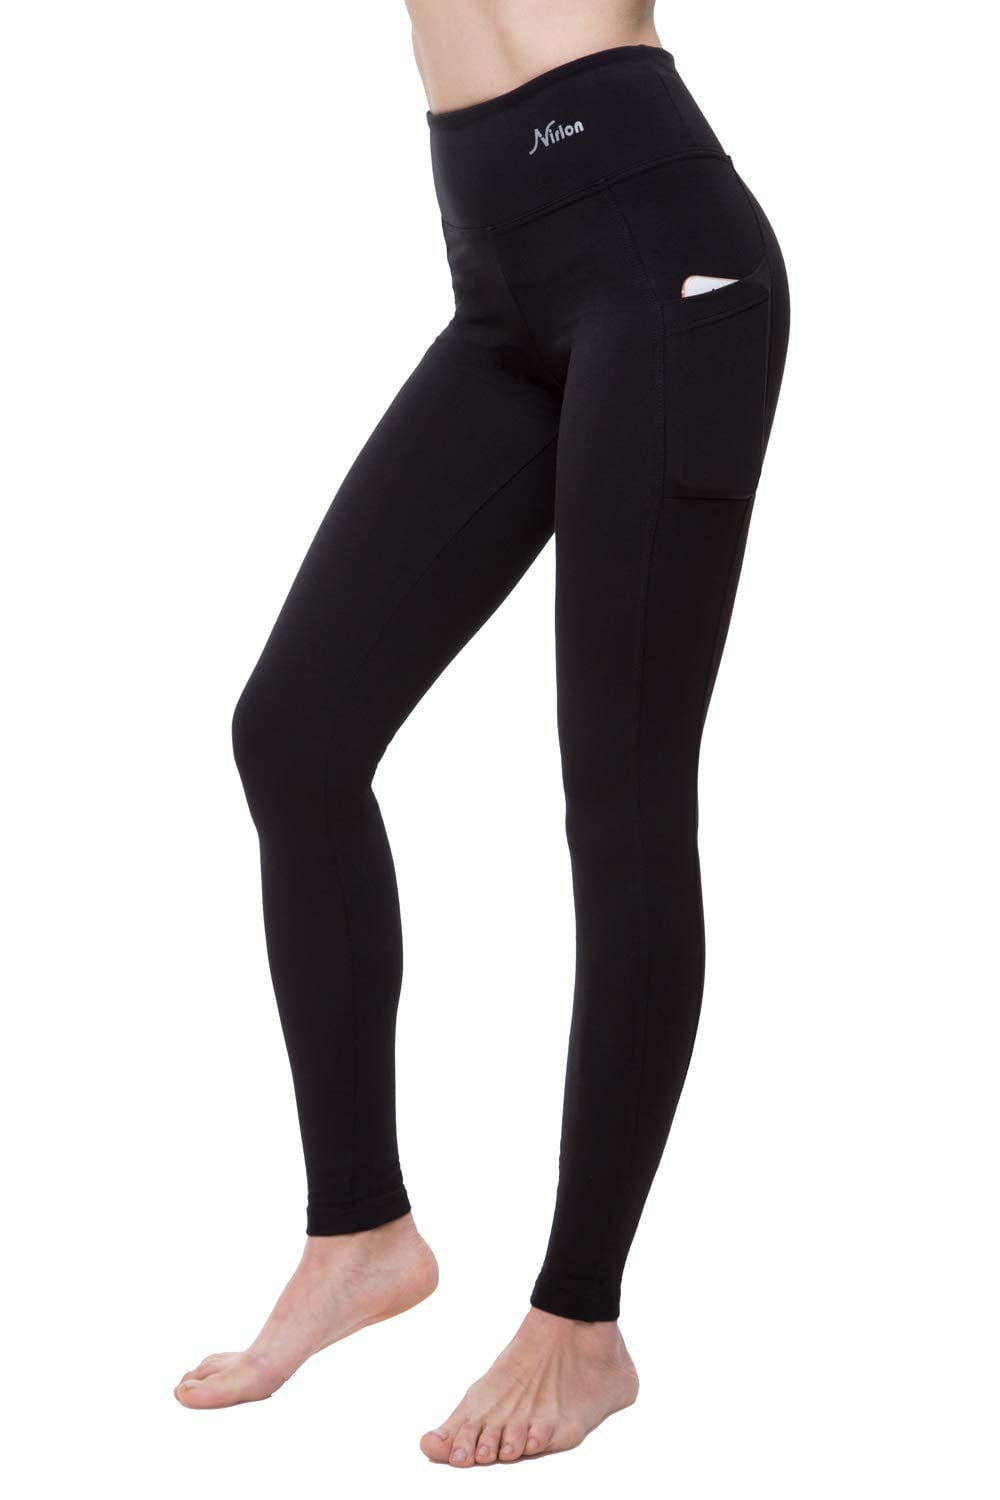 GetUSCart- Ewedoos Women's Yoga Pants with Pockets - Leggings with